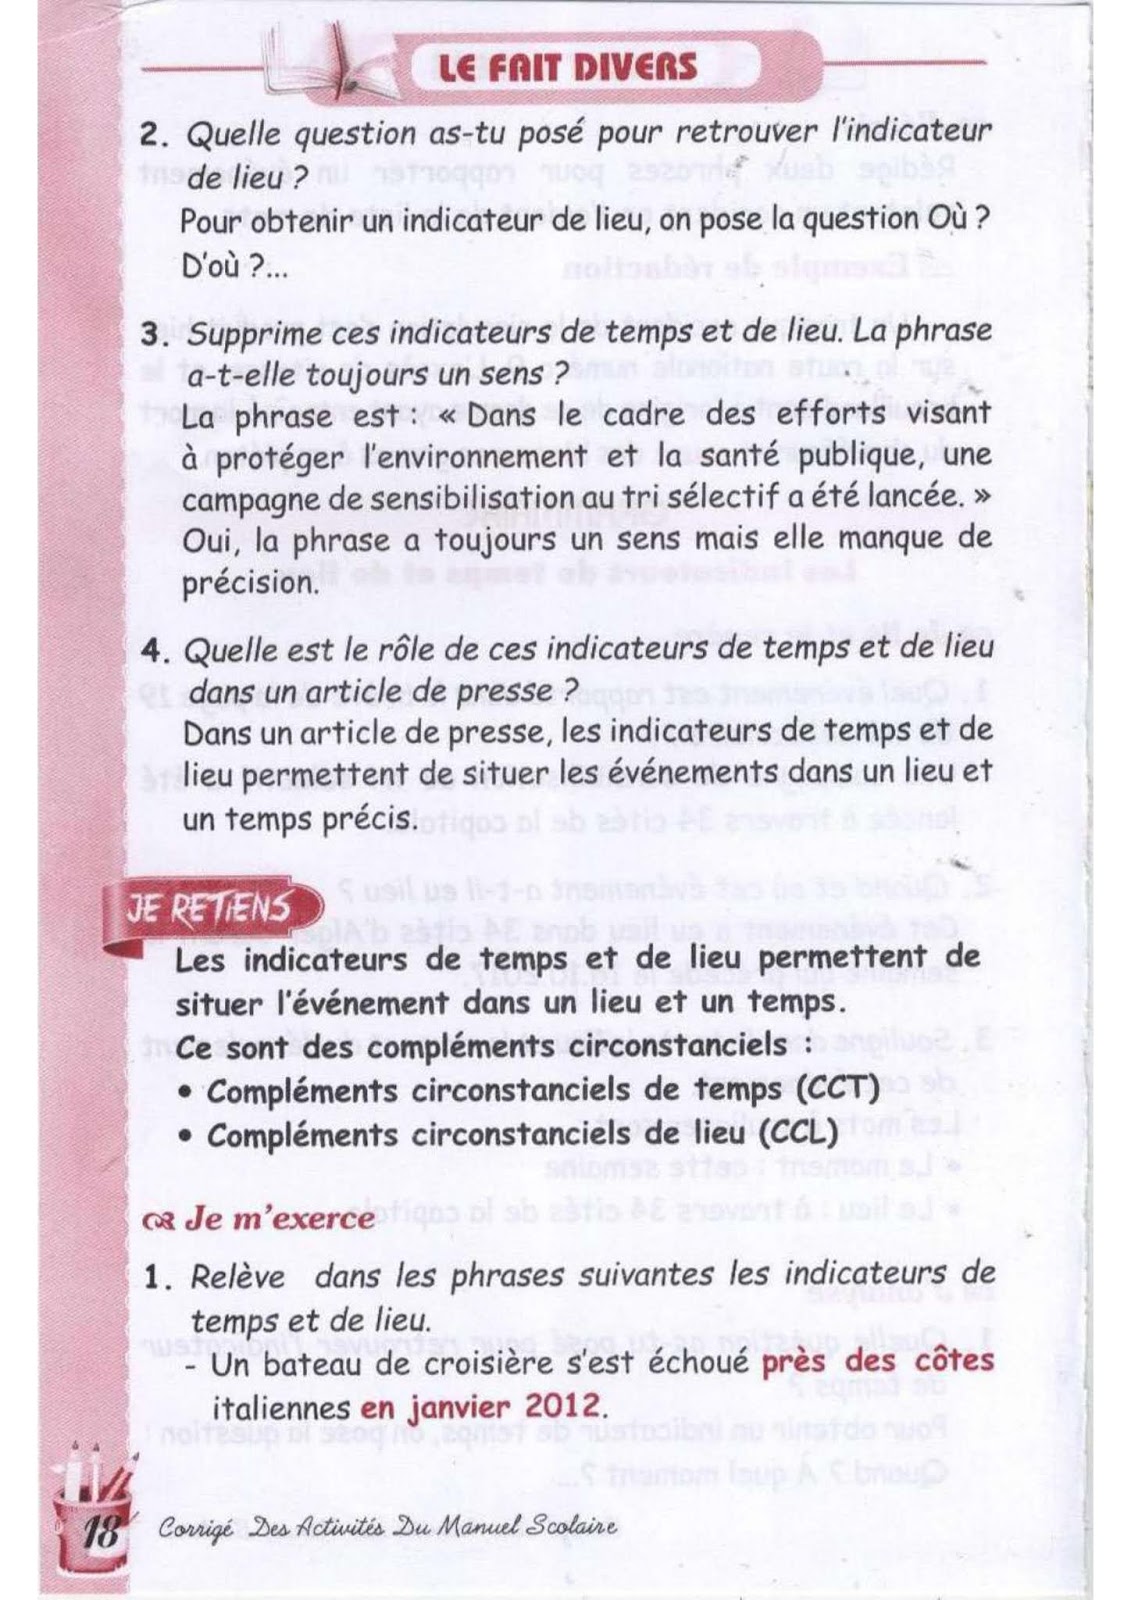 حل تمارين صفحة 19 الفرنسية للسنة الثالثة متوسط - الجيل الثاني